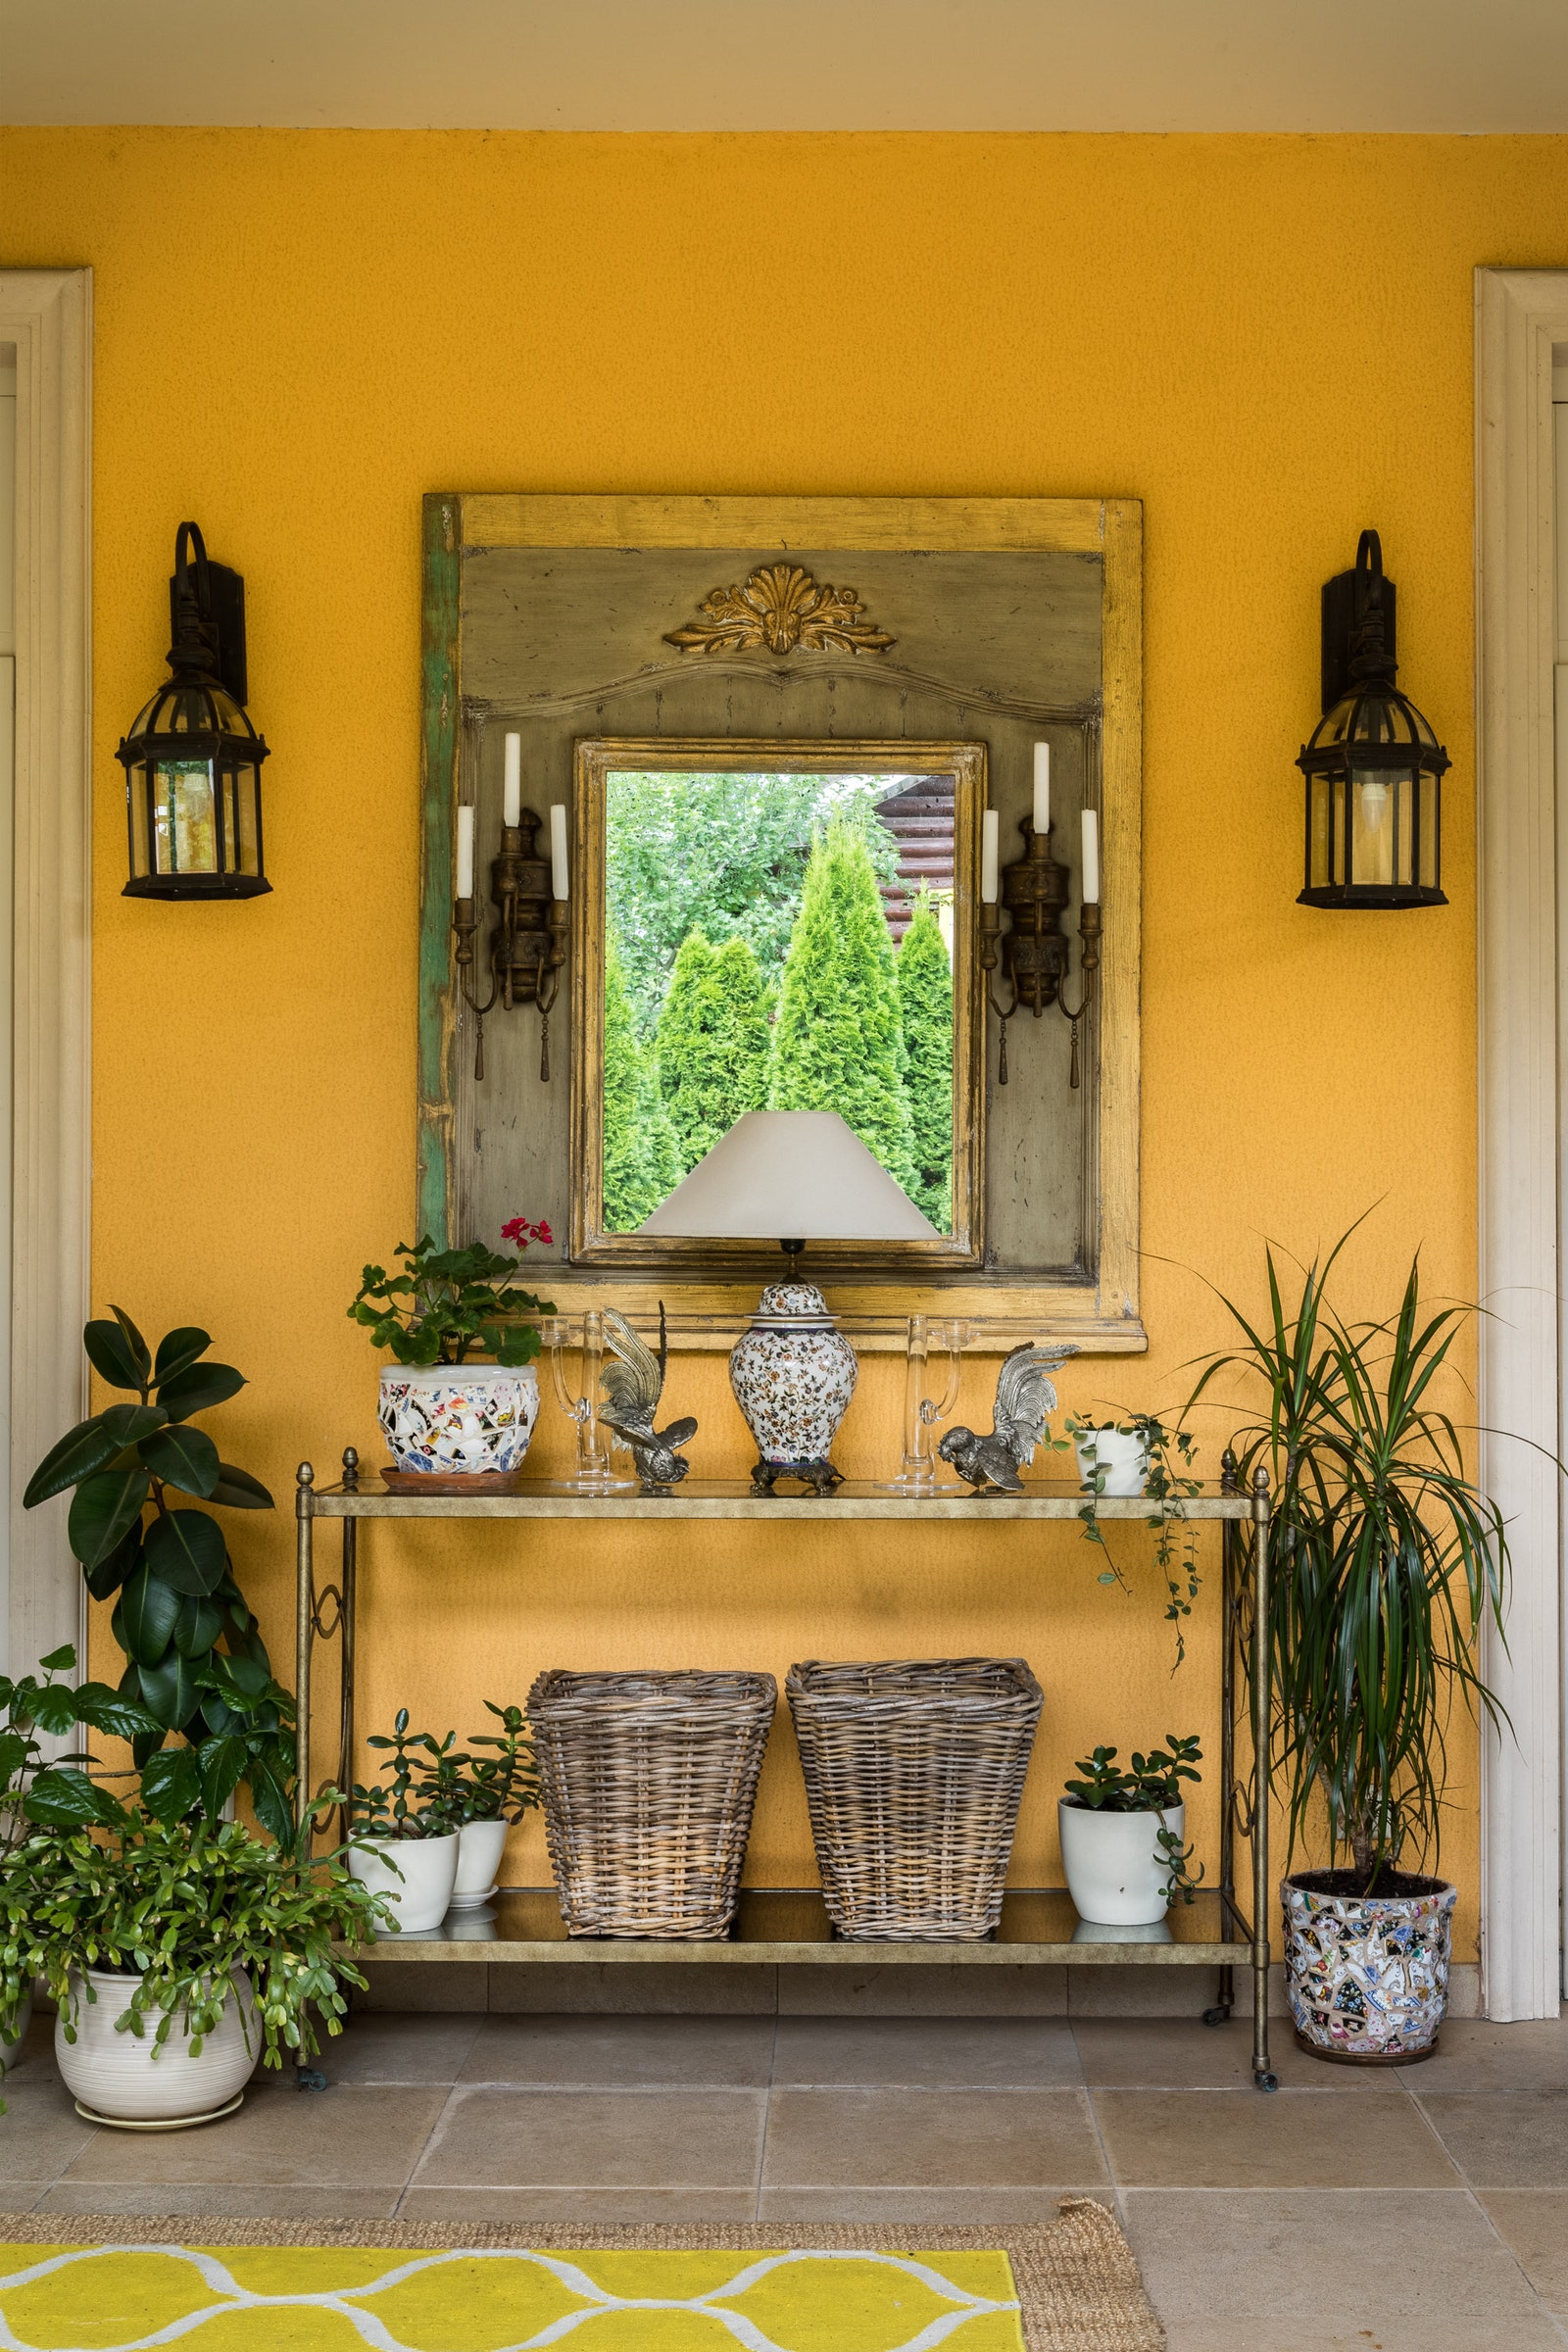 На террасе зеркало Highland House консоль Drexel Heritage цветочные горшки сделала хозяйка дома с использованием...